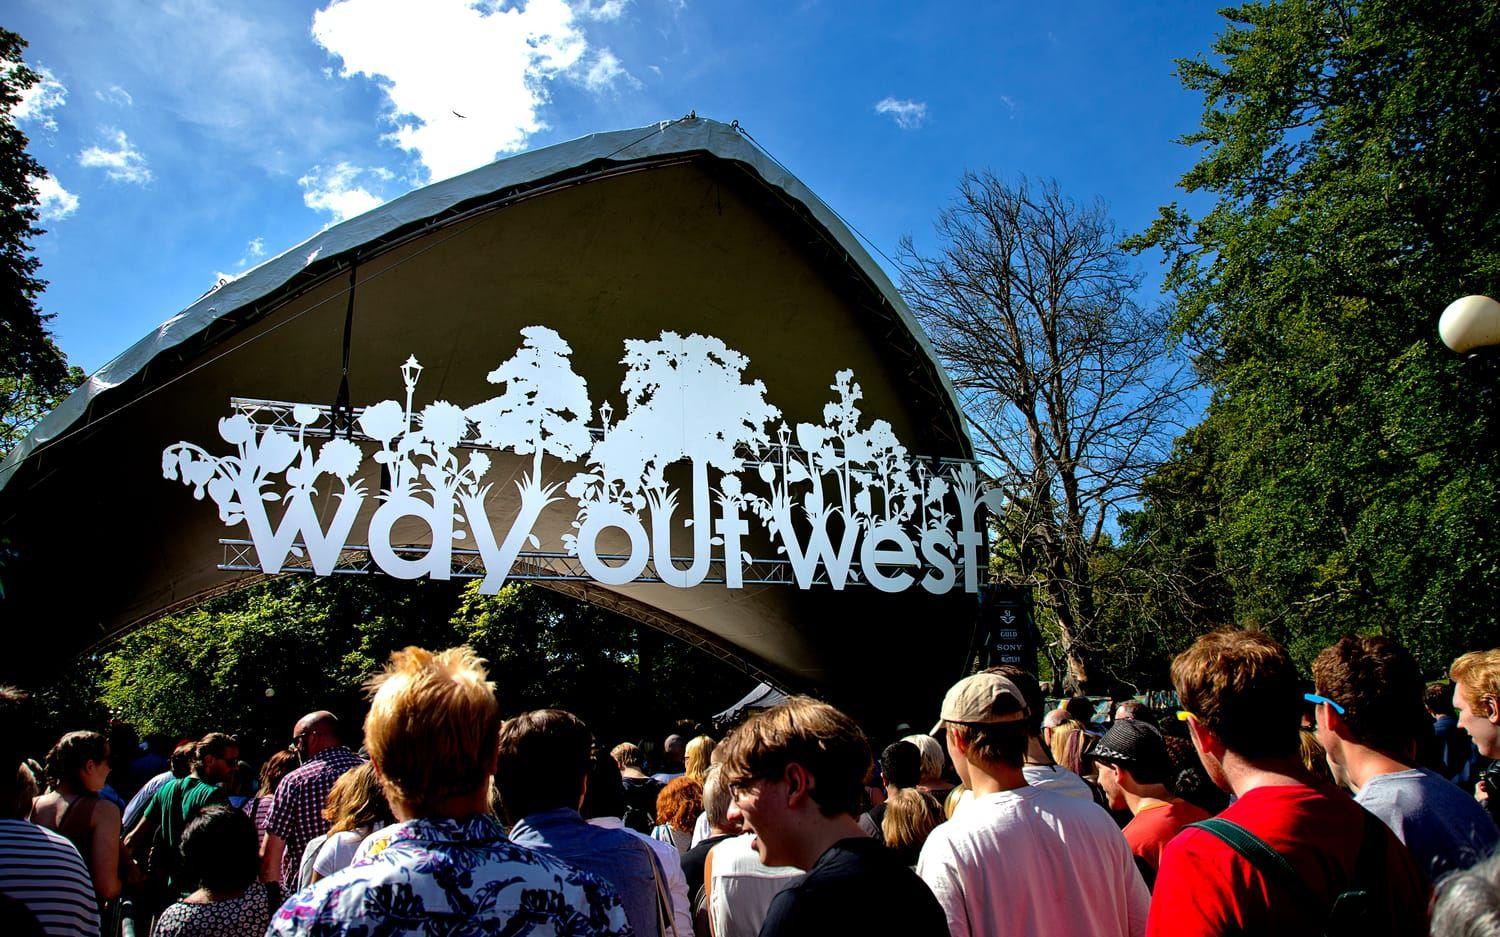 Musikfestivalen Way Out West är troligen ett bidragande evenemang som bidrar till kulturlivet i staden. Bild: TT